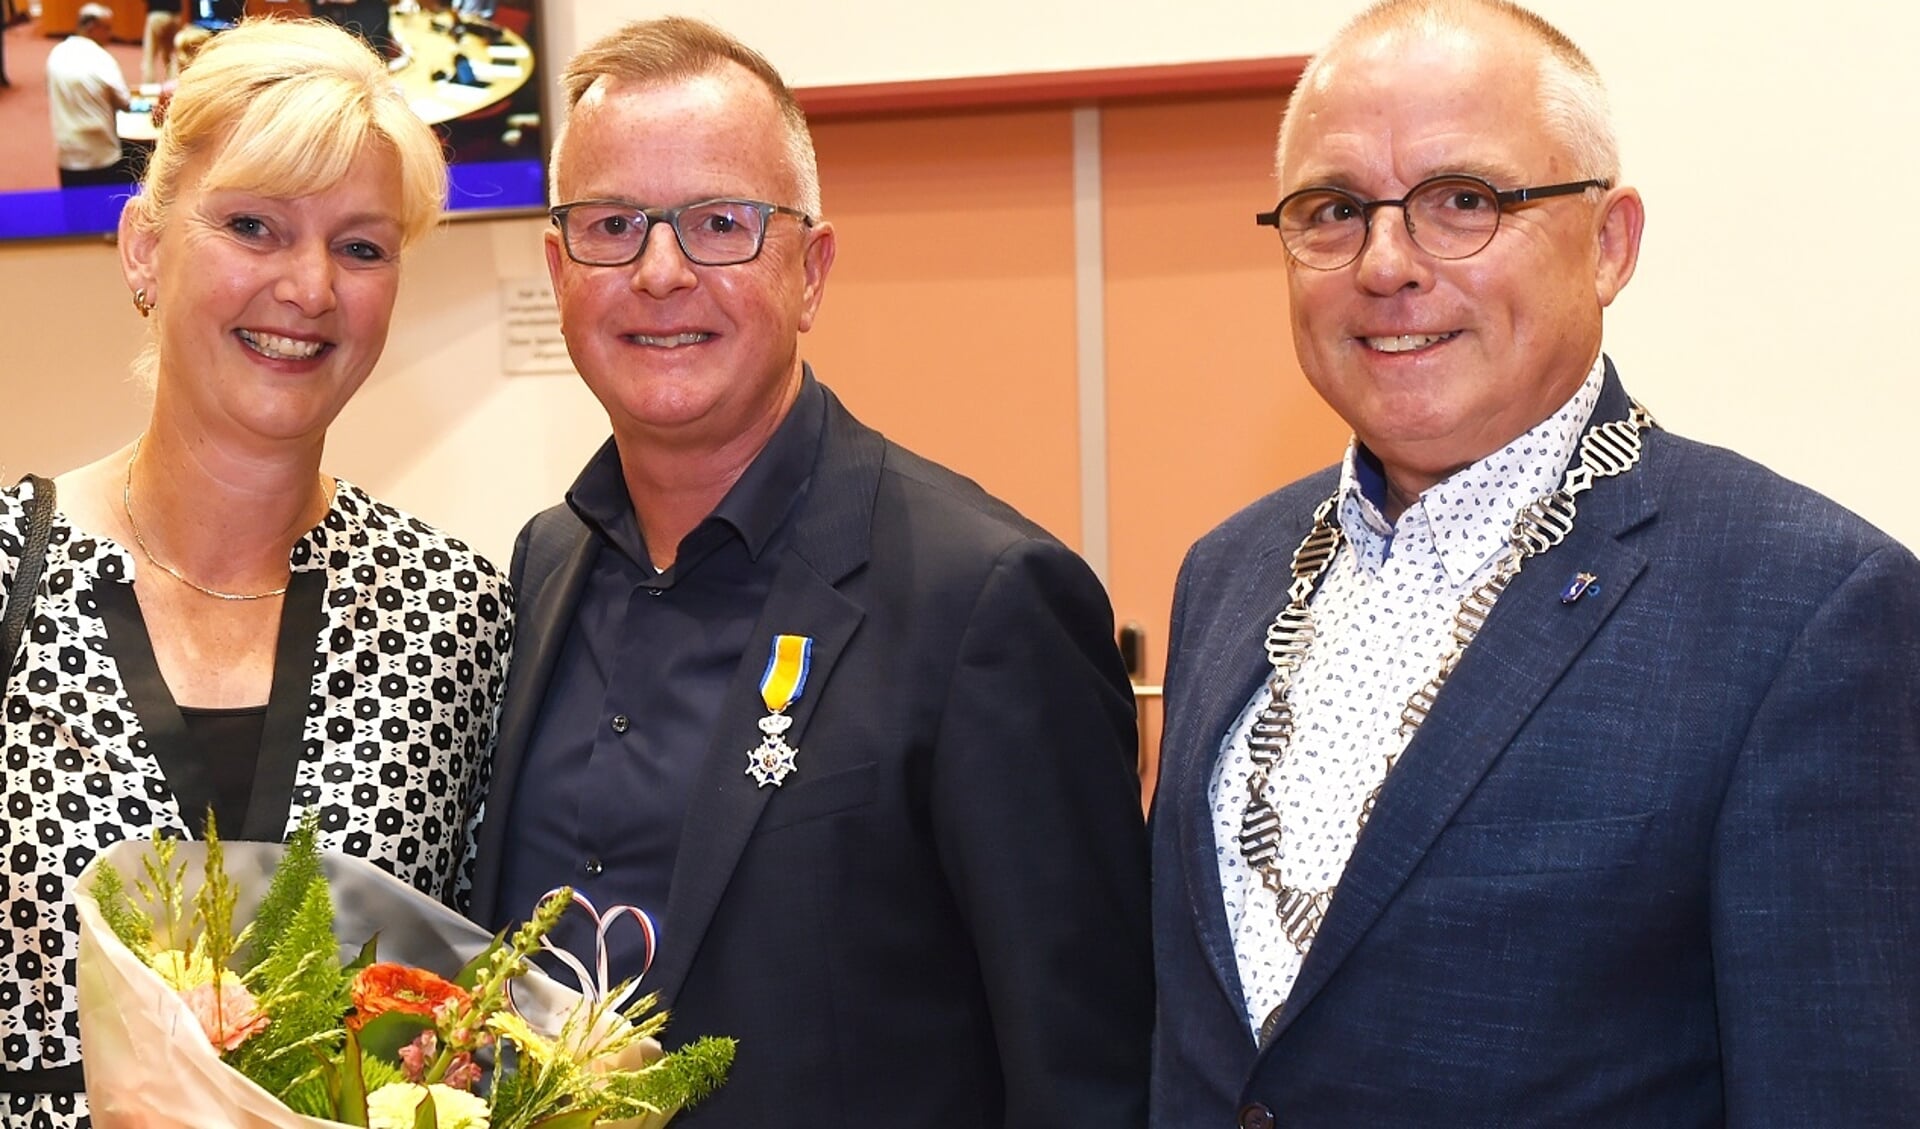 Koninklijke onderscheiding voor de heer Rolf van Wanrooij. Vlnr.: mevrouw van Wanrooij, de heer van Wanrooij en locoburgemeester Schalkwijk.